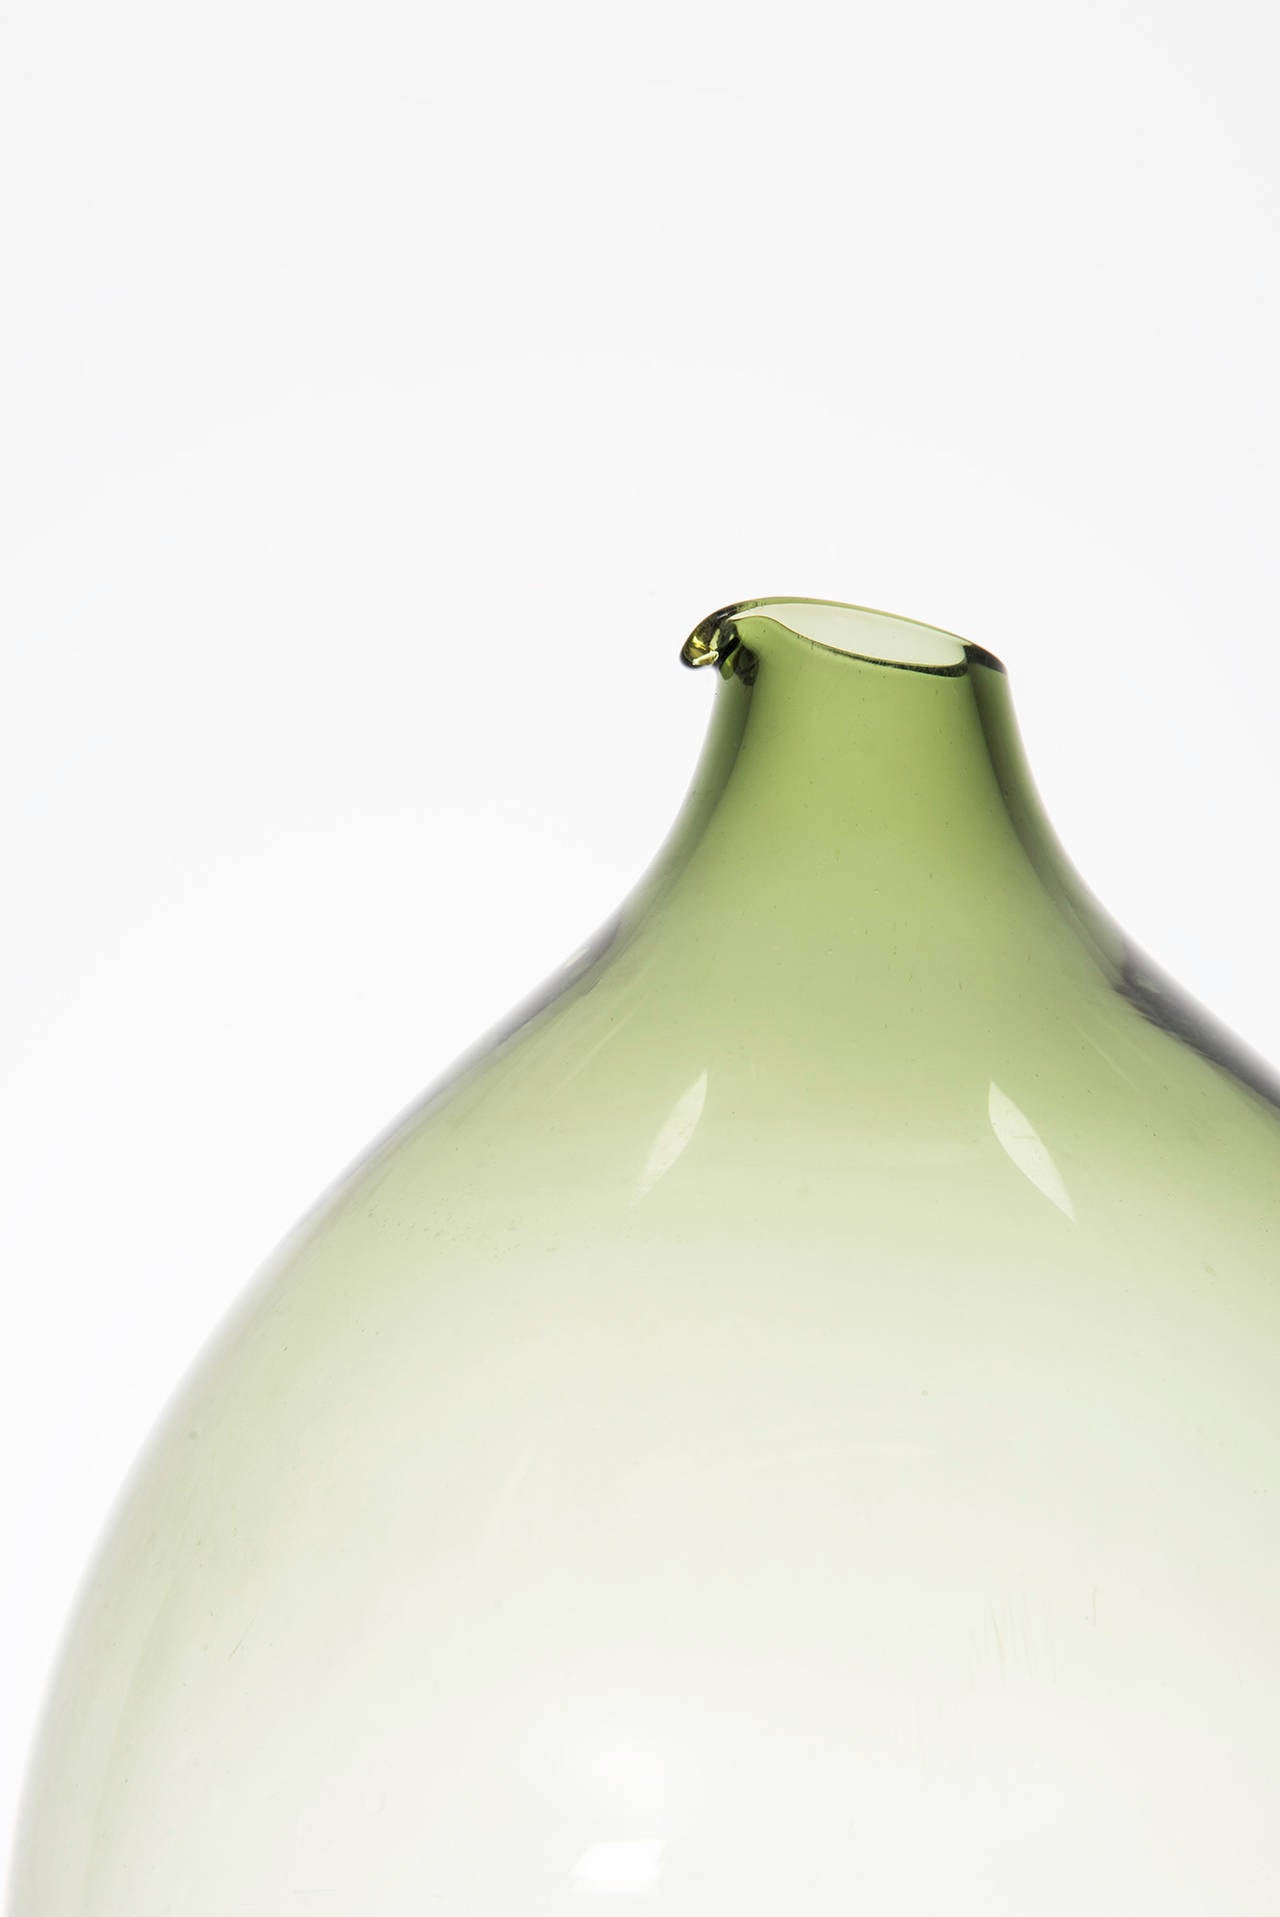 Glass vase designed in 1963 by Kjell Blomberg. Produced in Gullaskruf in Sweden.